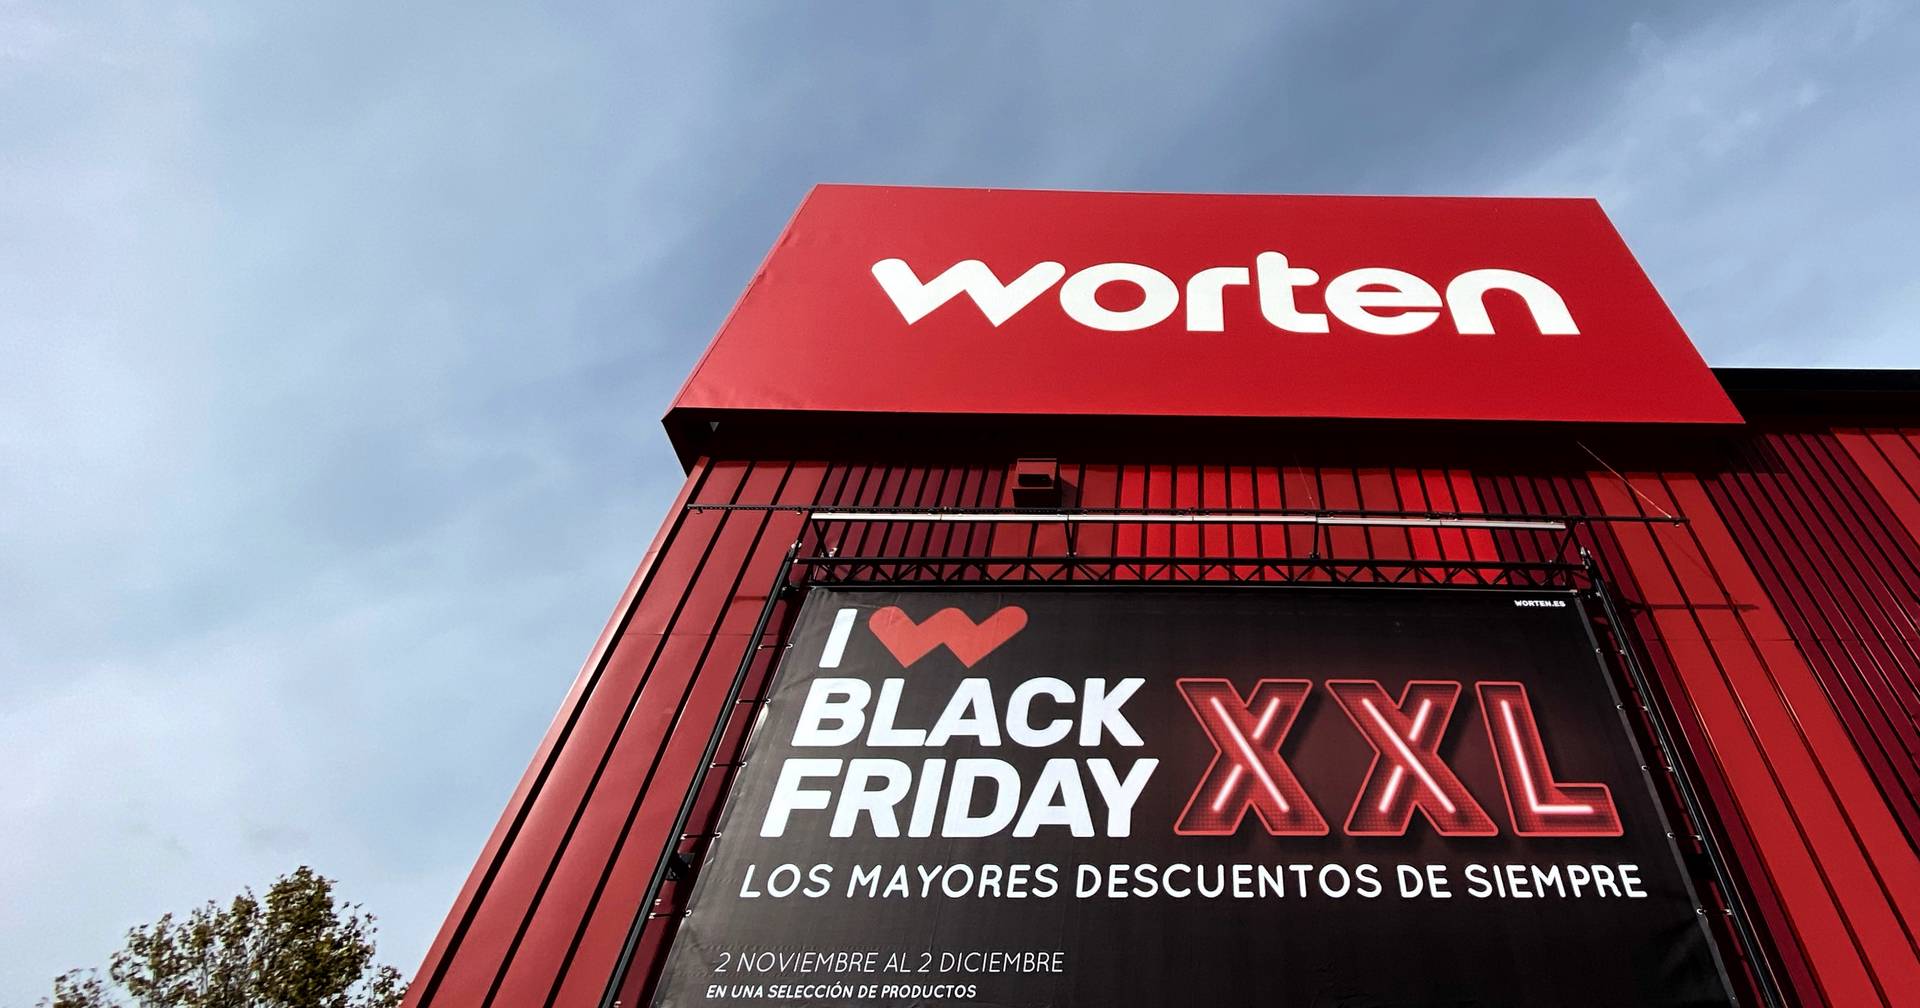 17 lojas físicas da Worten em Espanha adquiridas pela MediaMarkt